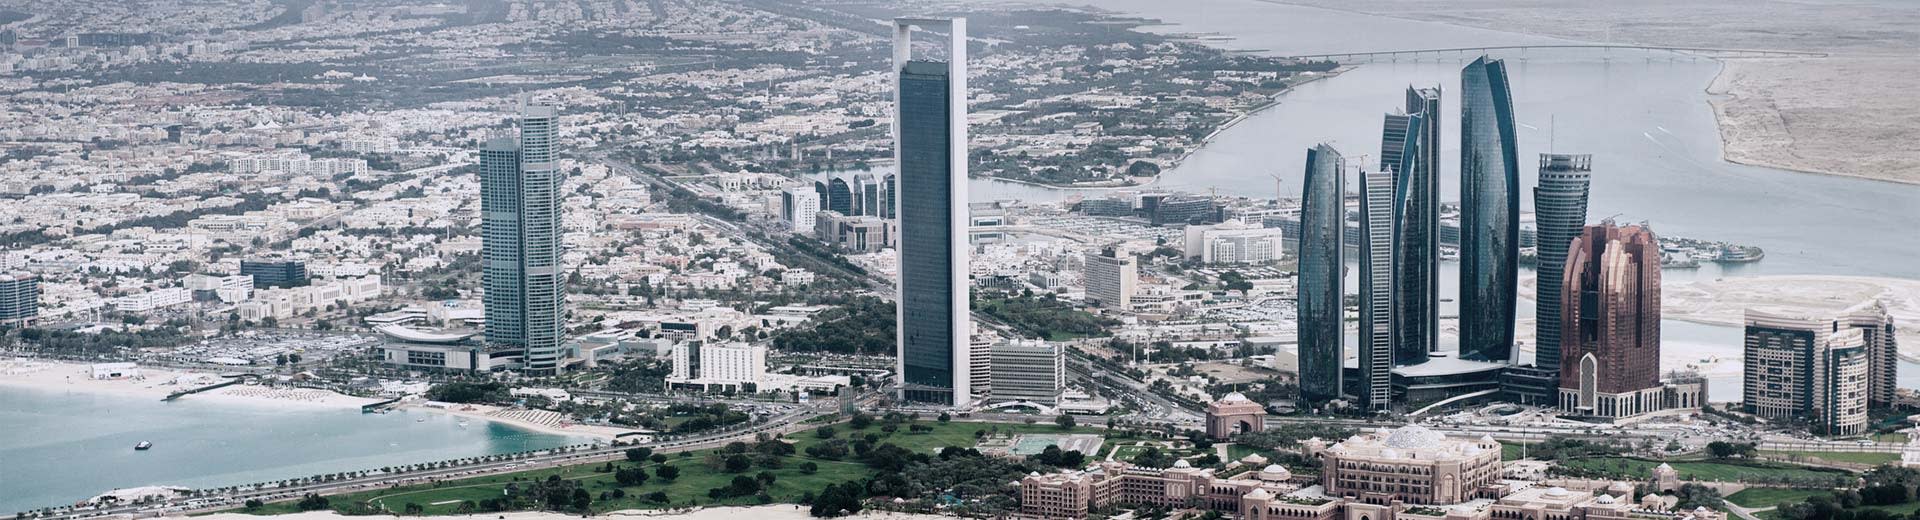 Panorama del centro de la ciudad de Abu Dhabi con una vista clara de los rascacielos y el desierto en el fondo.